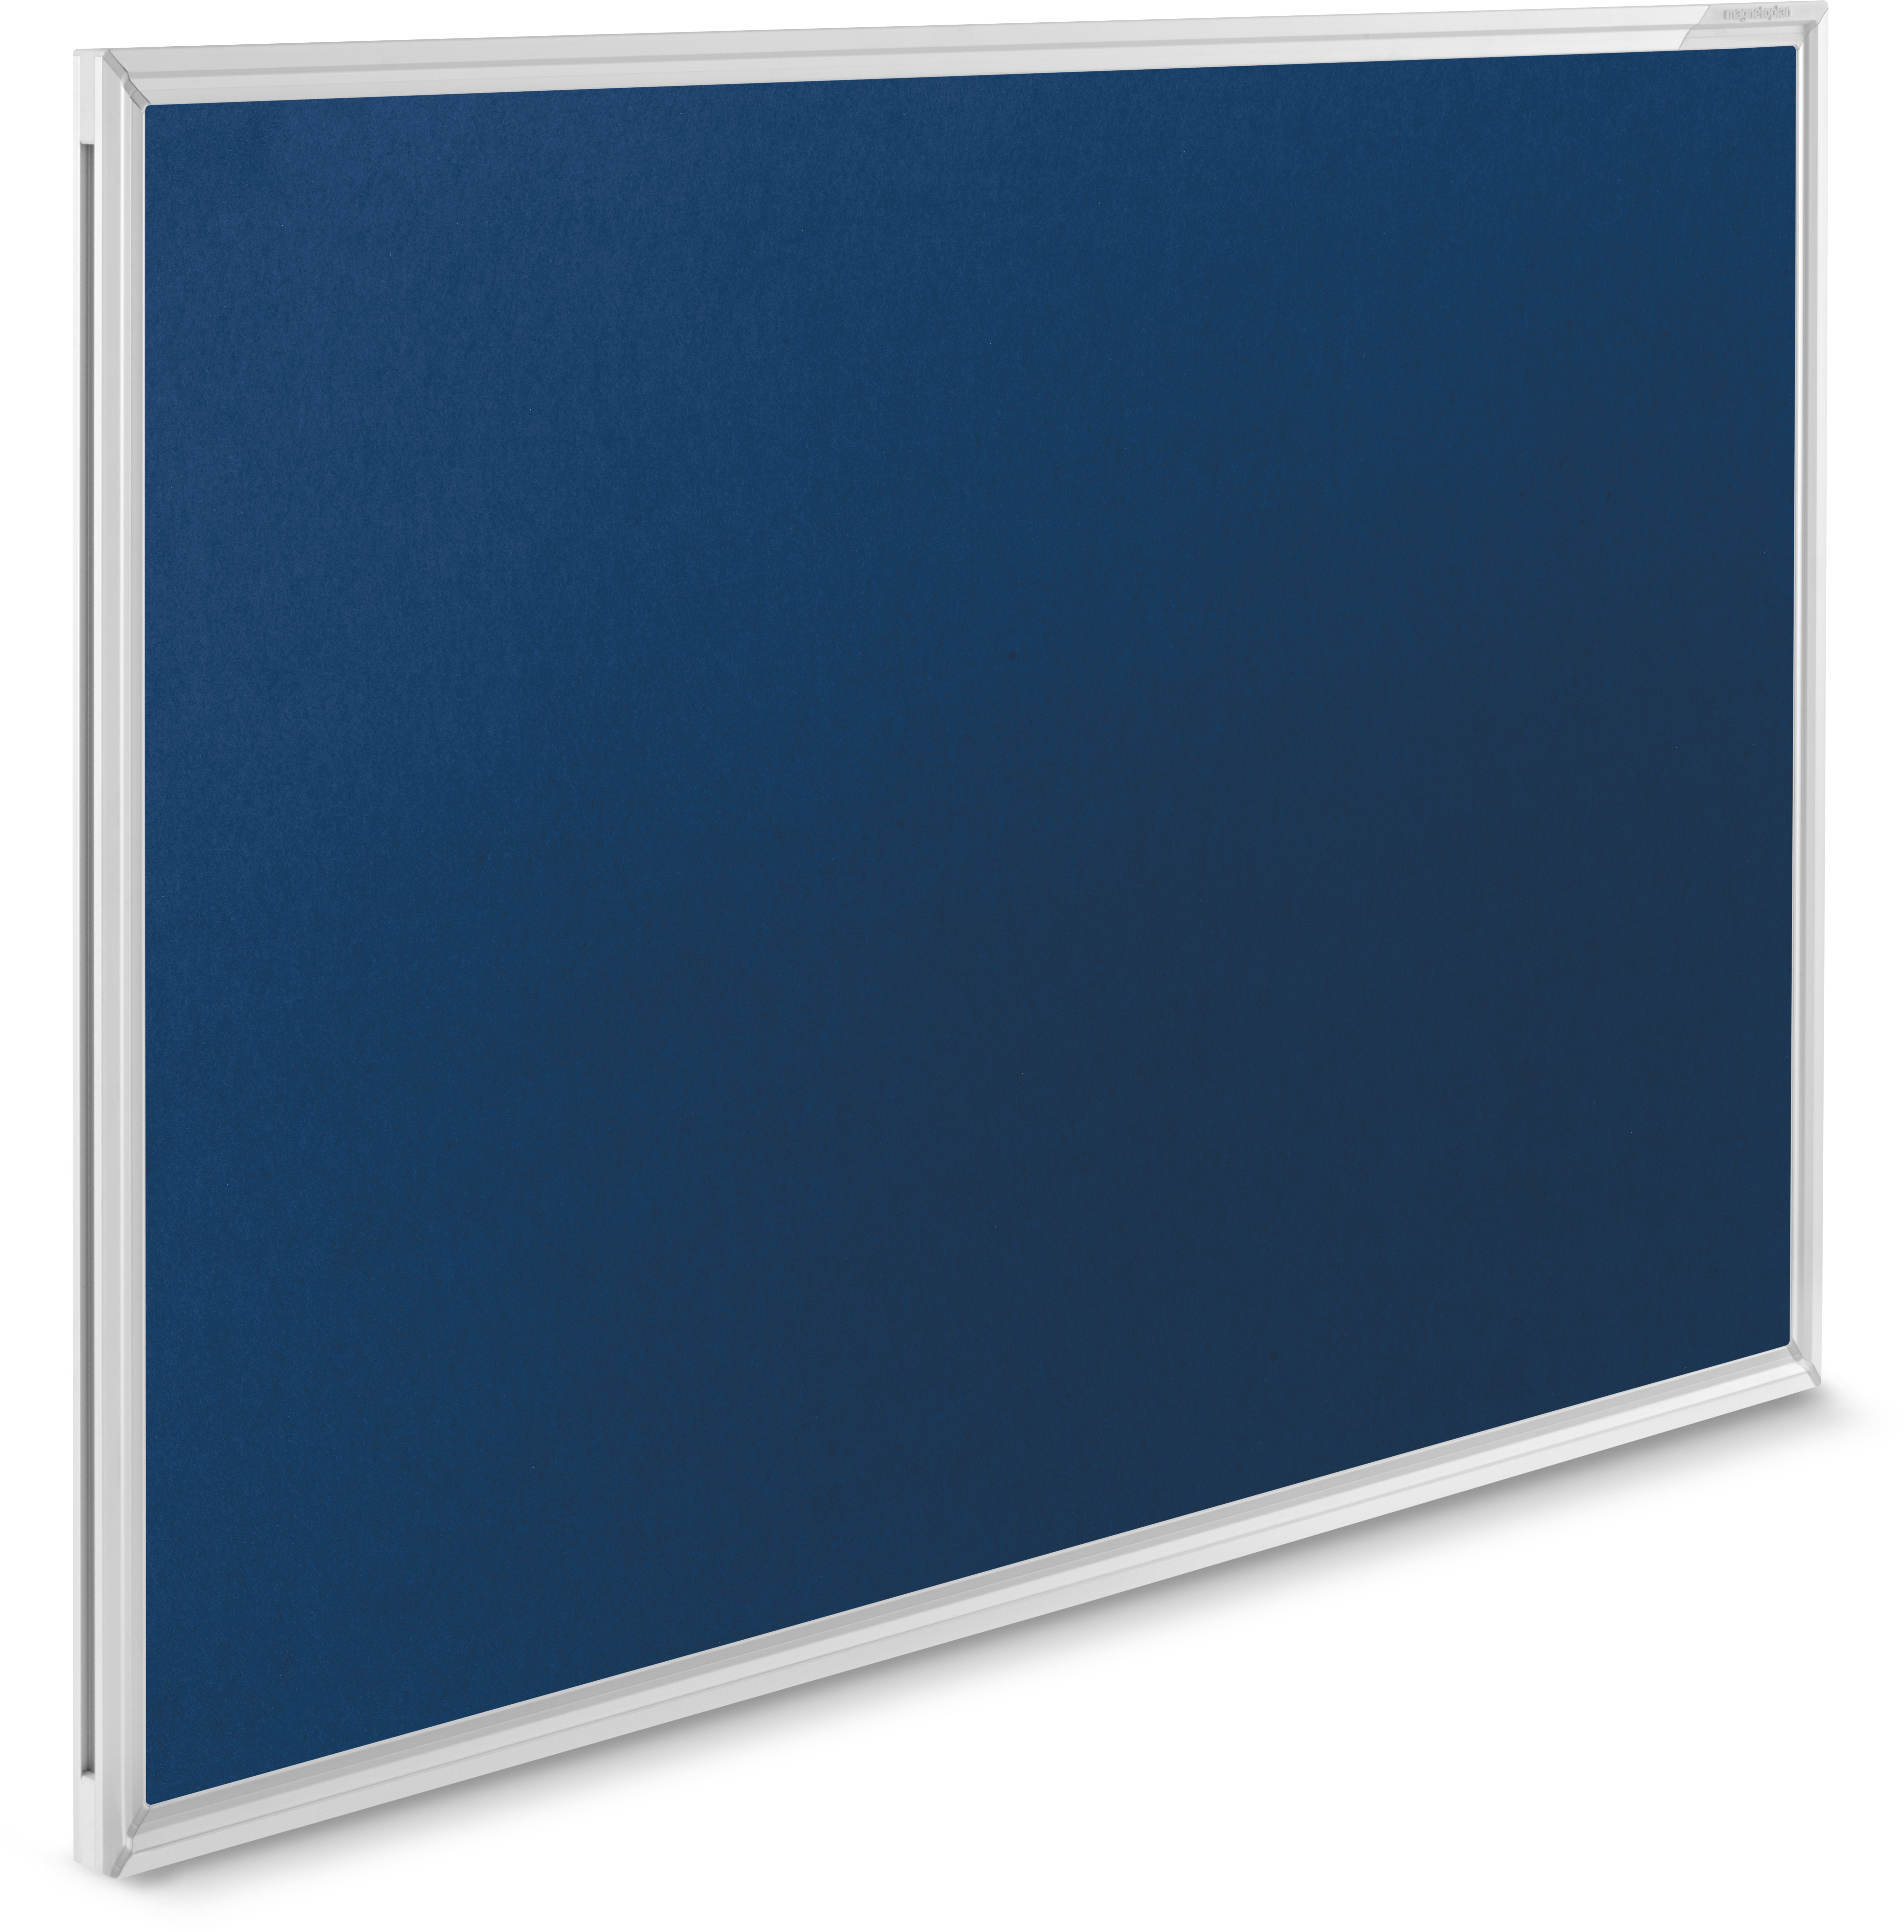 MAGNETOPLAN Design-Pinnboard SP 1412003 bleu, feutre 1200x900mm bleu, feutre 1200x900mm